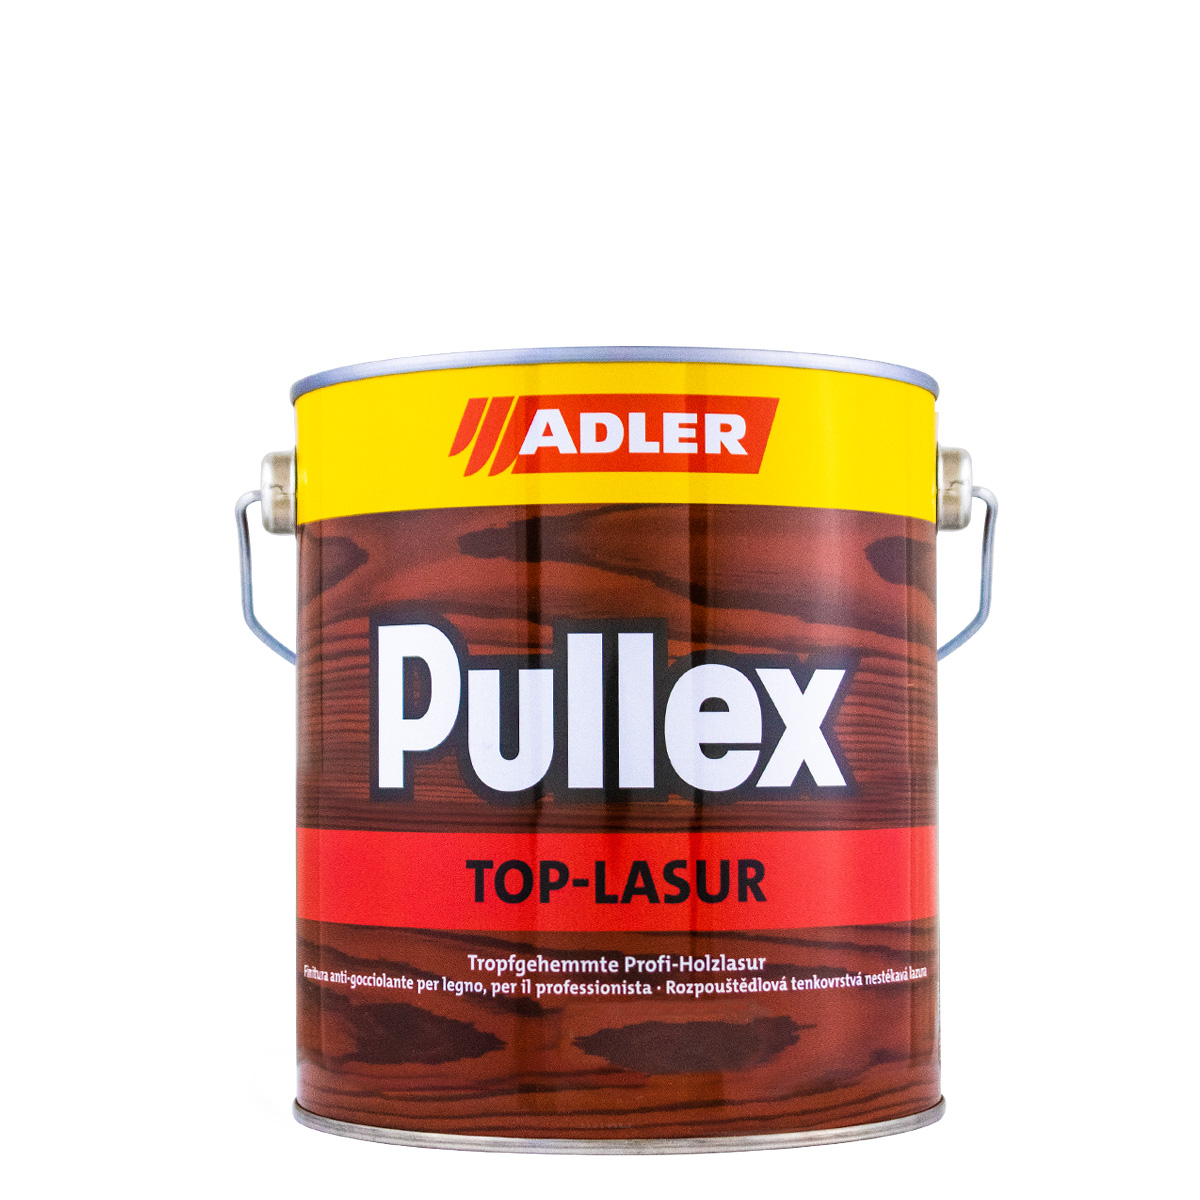 adler_pullex_top-lasur_2,5L_gross